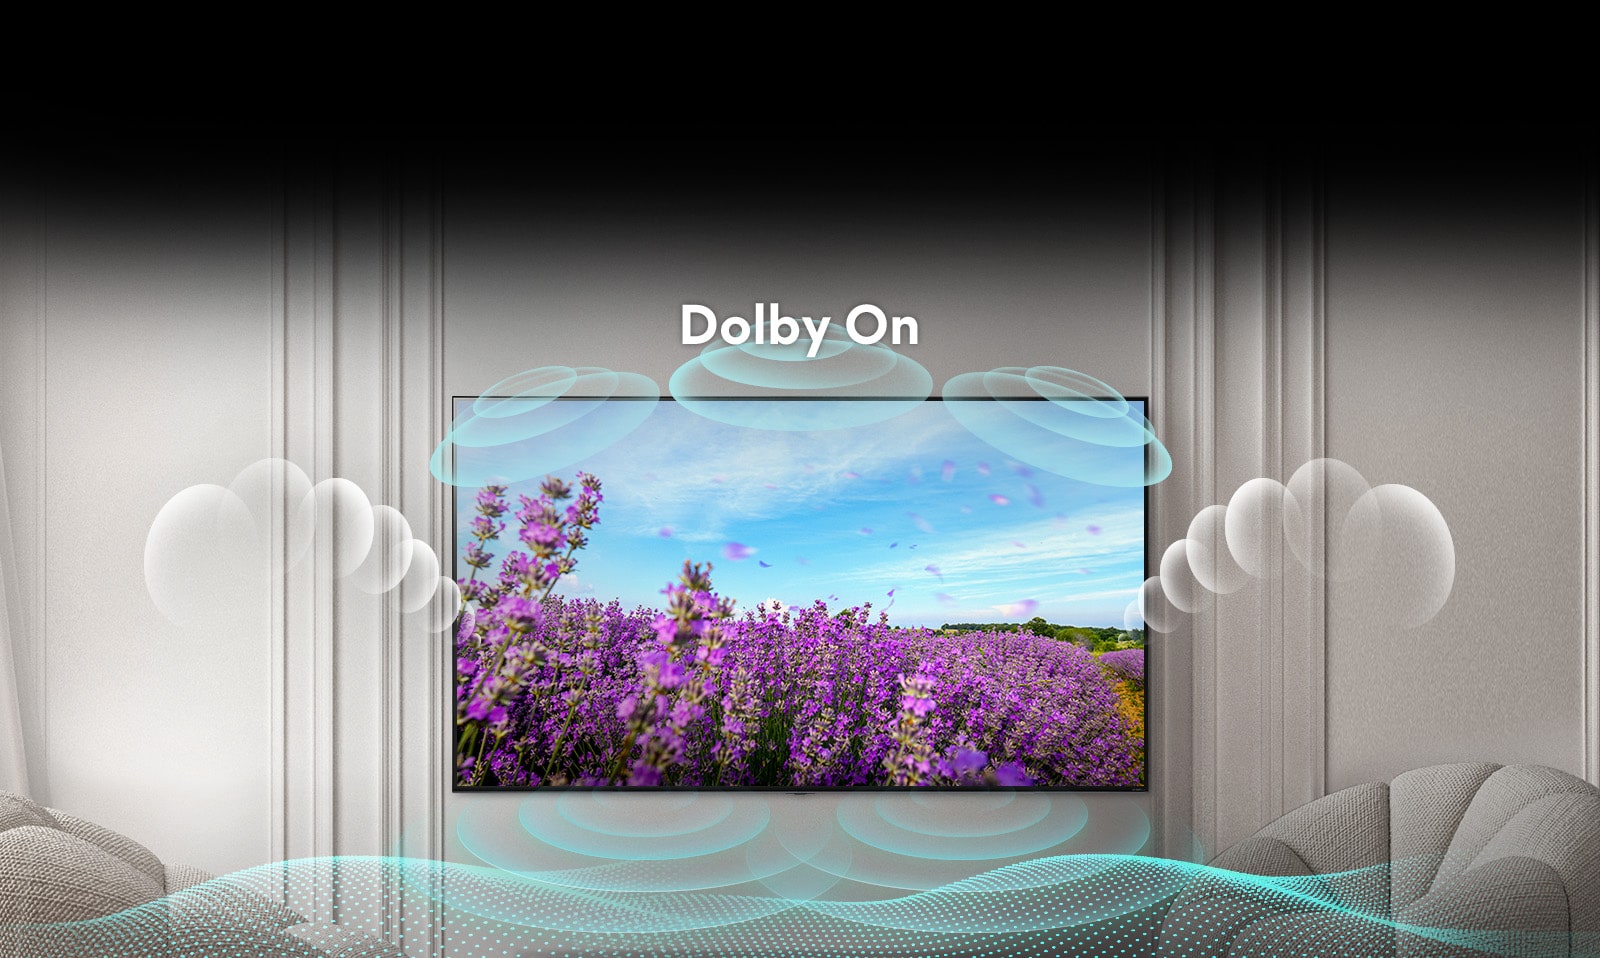 صفحه تلویزیون QNED شکوفه‌های صورتی کلزا را در مزرعه ای تابستانی به همراه عبارت «Dolby خاموش» در وسط تصویر نشان می‌دهد. تصویر درون صفحه روشن‌تر شده و عبارت به «Dolby روشن» تغییر می‌کند.